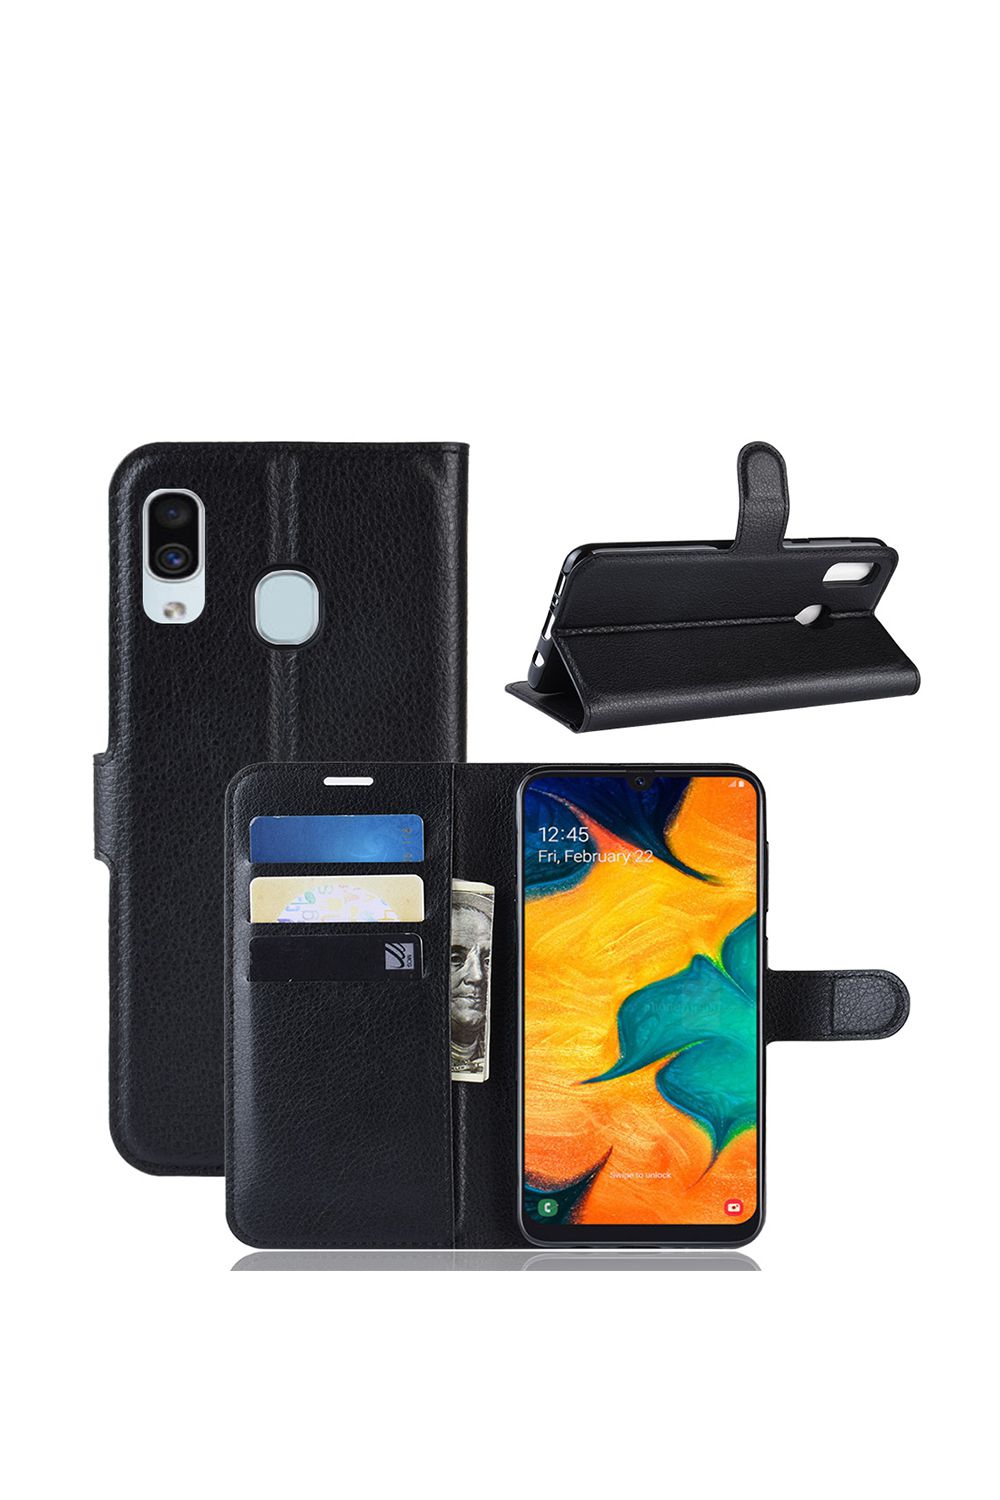 Google Pixel Wallet Flip Case with Card Holder